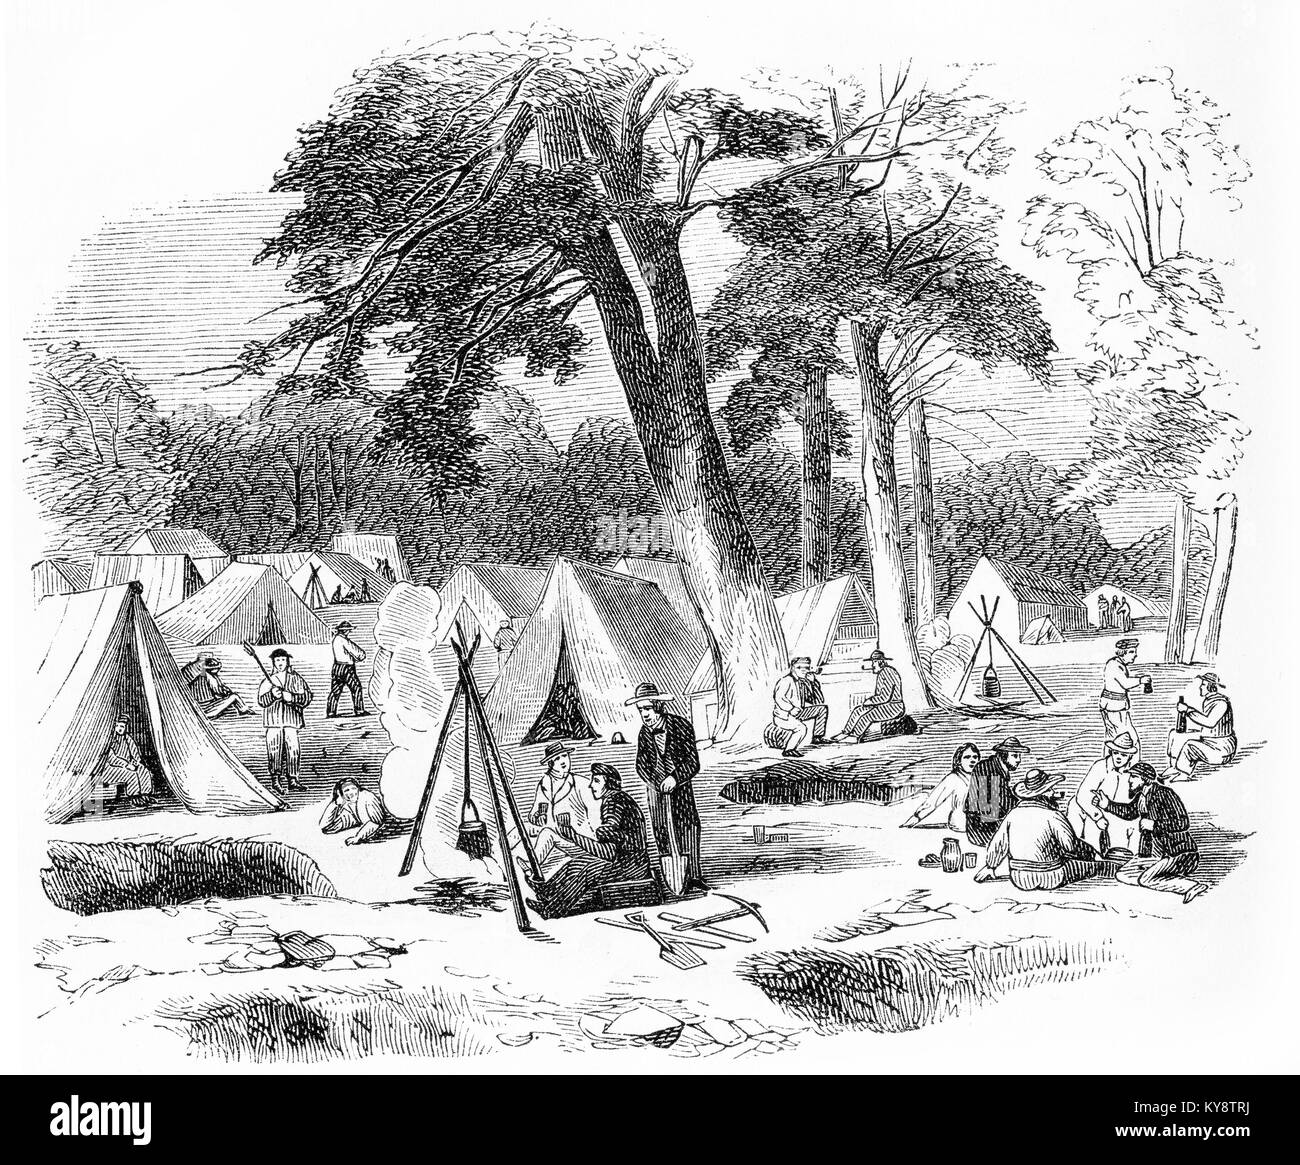 Grabado de cateadores acamparon en un campo de oro durante el goldrushes de los 1800s. A partir de un original grabado en la Harper's libros de cuentos por Jacob Abbott, 1854. Foto de stock